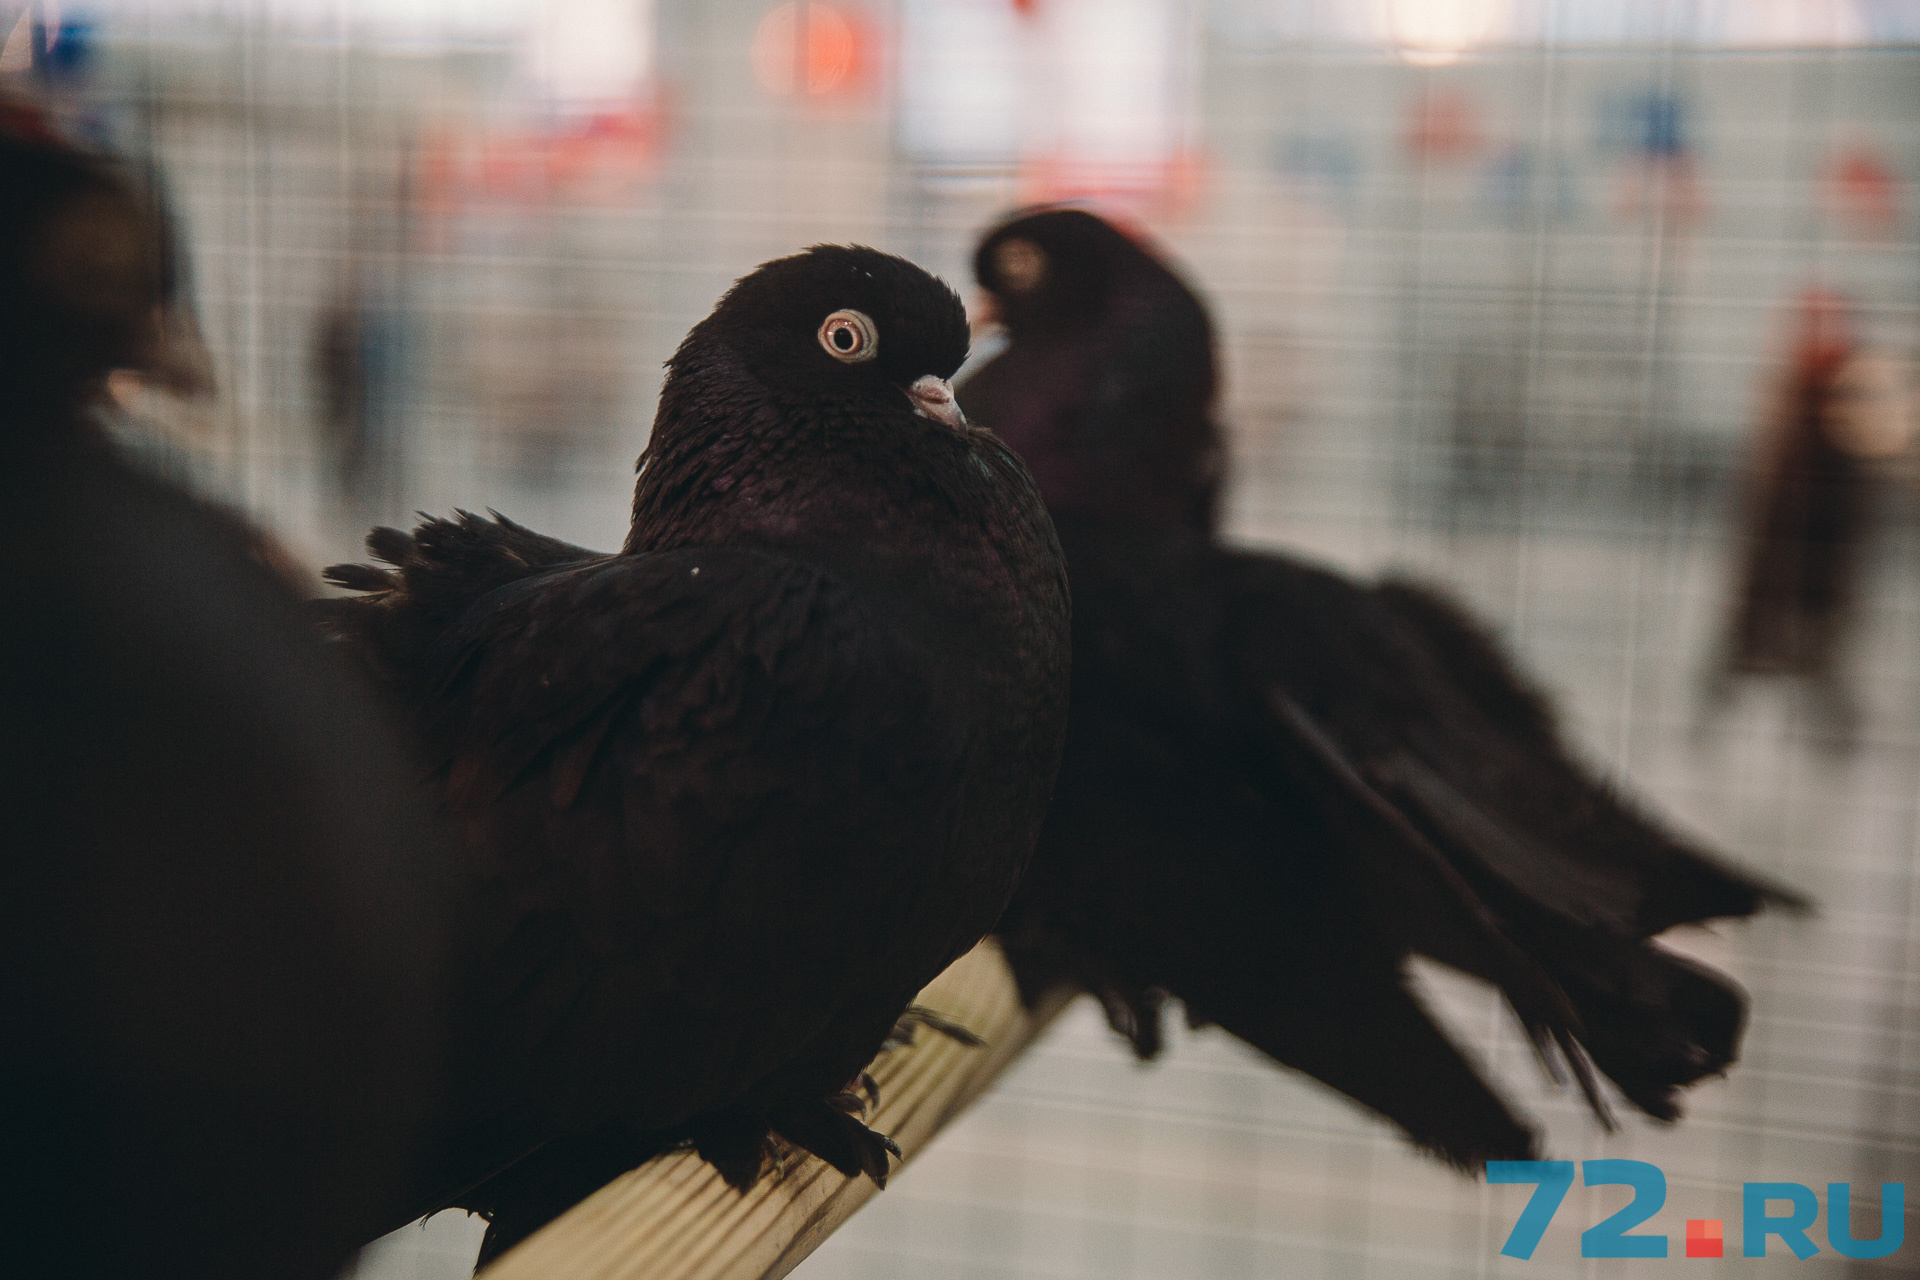 Когда птицы находятся в возбужденном состоянии, то они могут сильно трясти шеей